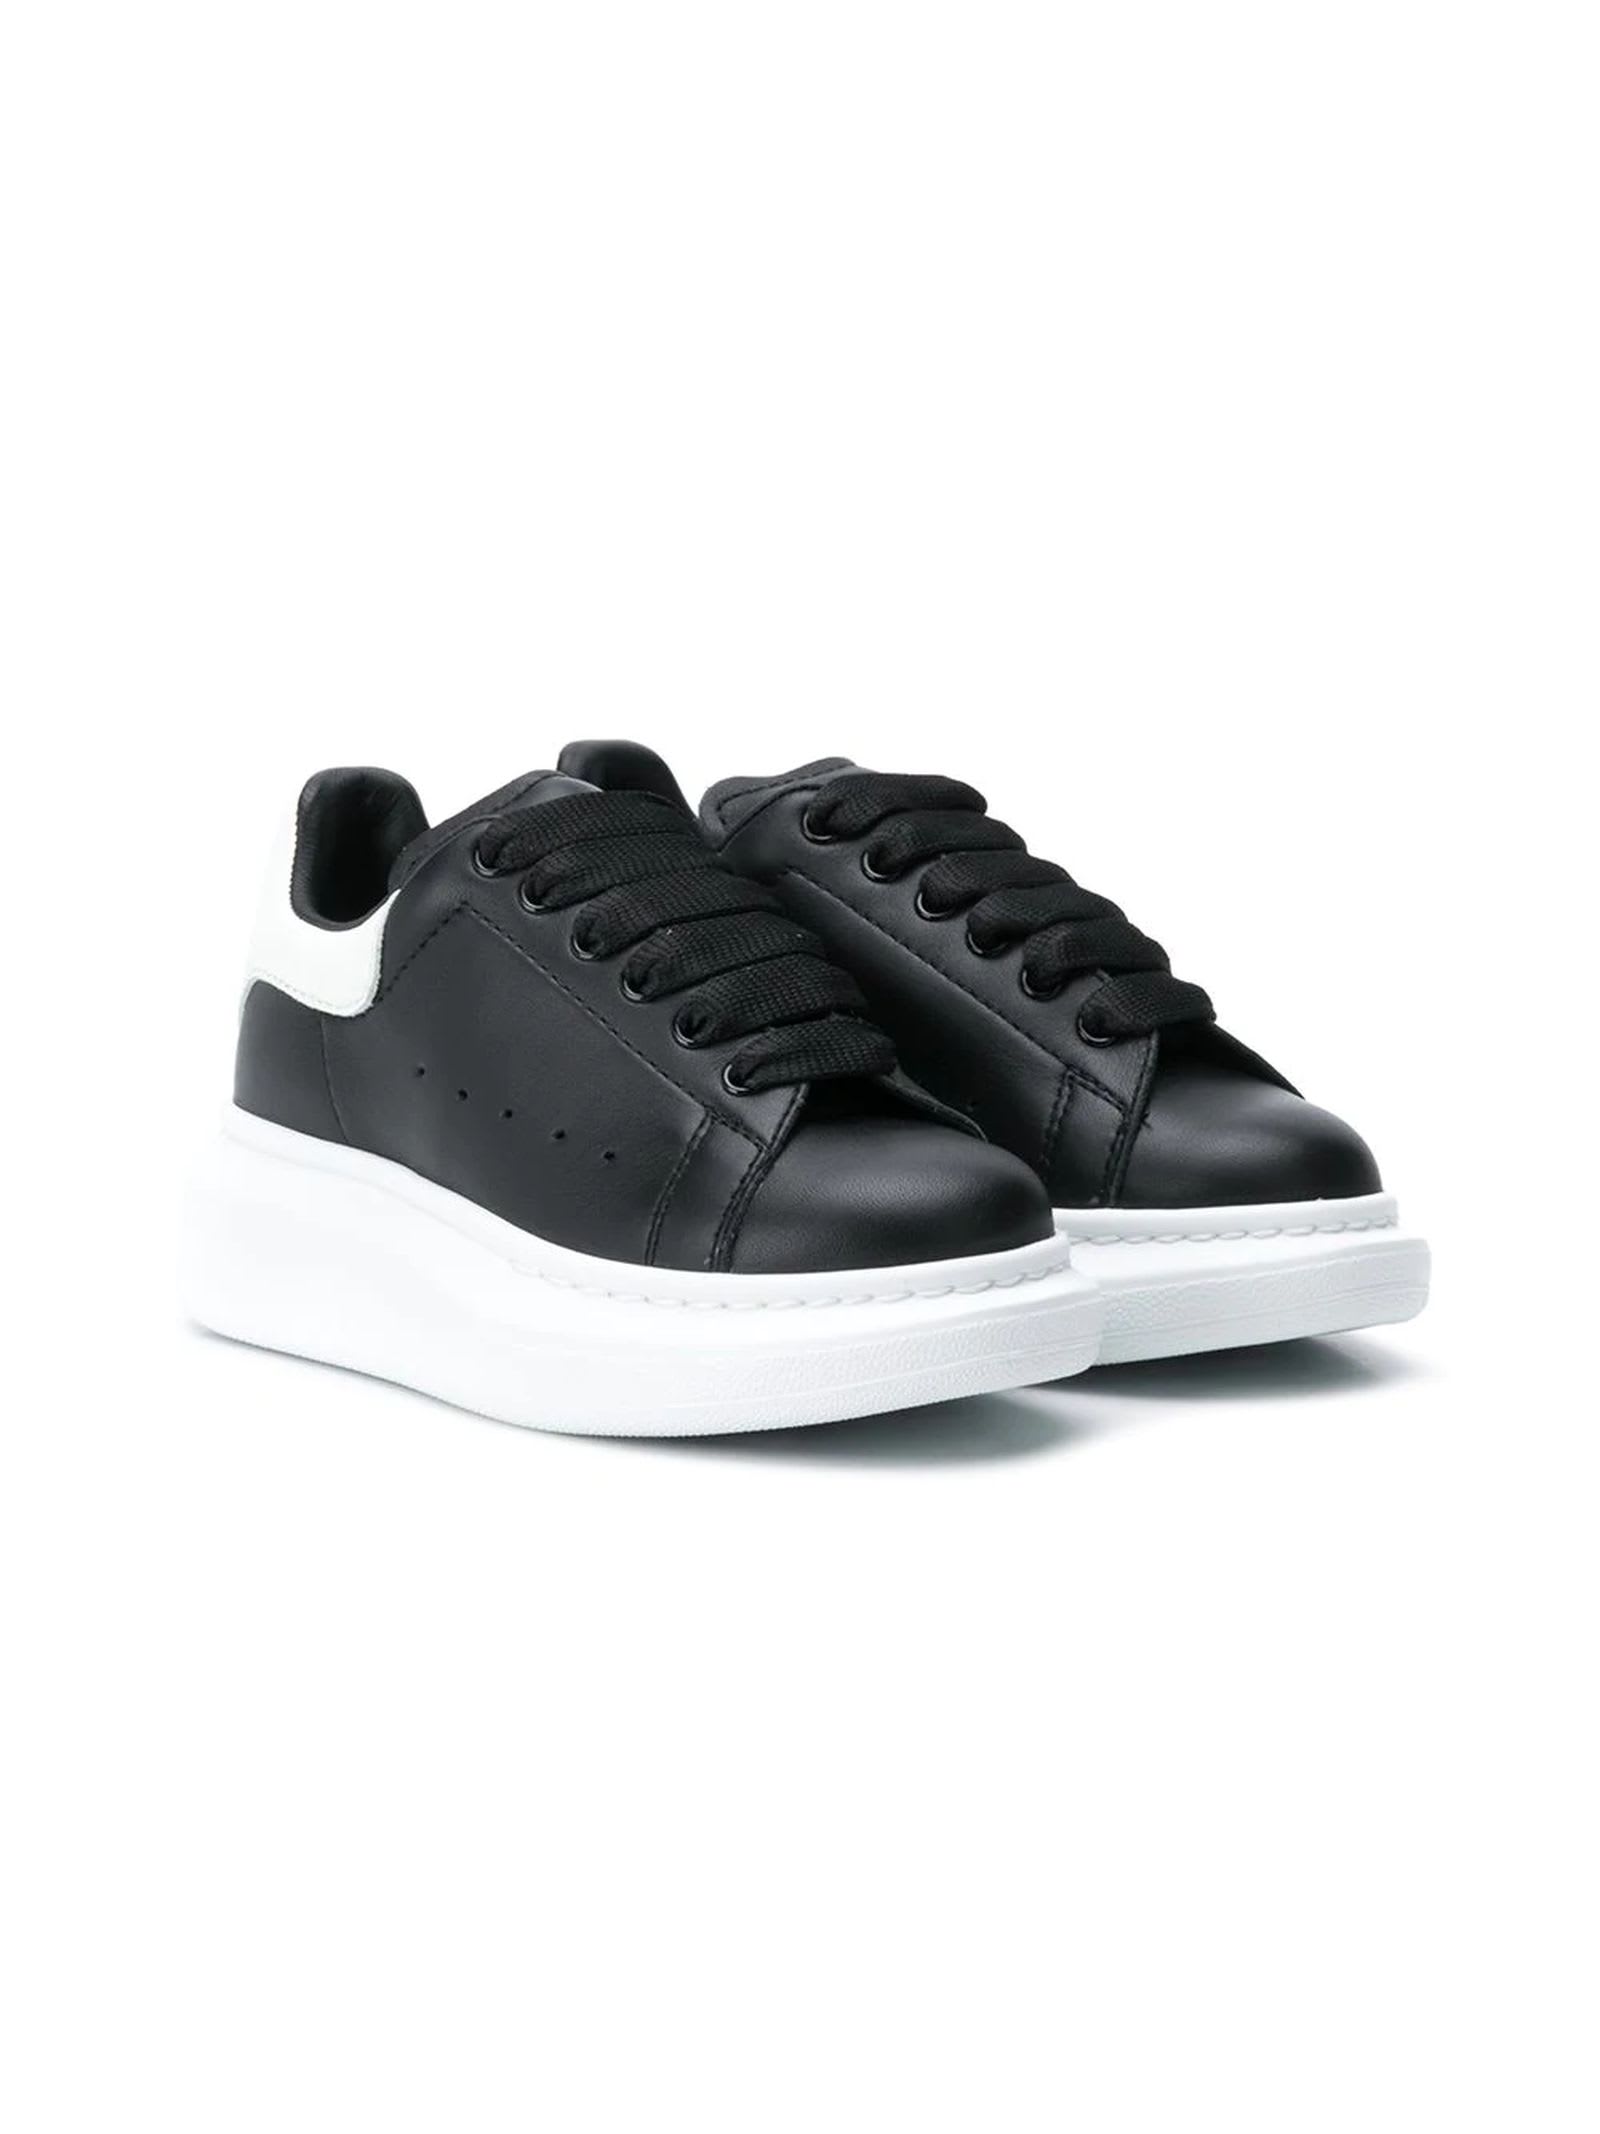 Alexander McQueen Black Leather Sneakers